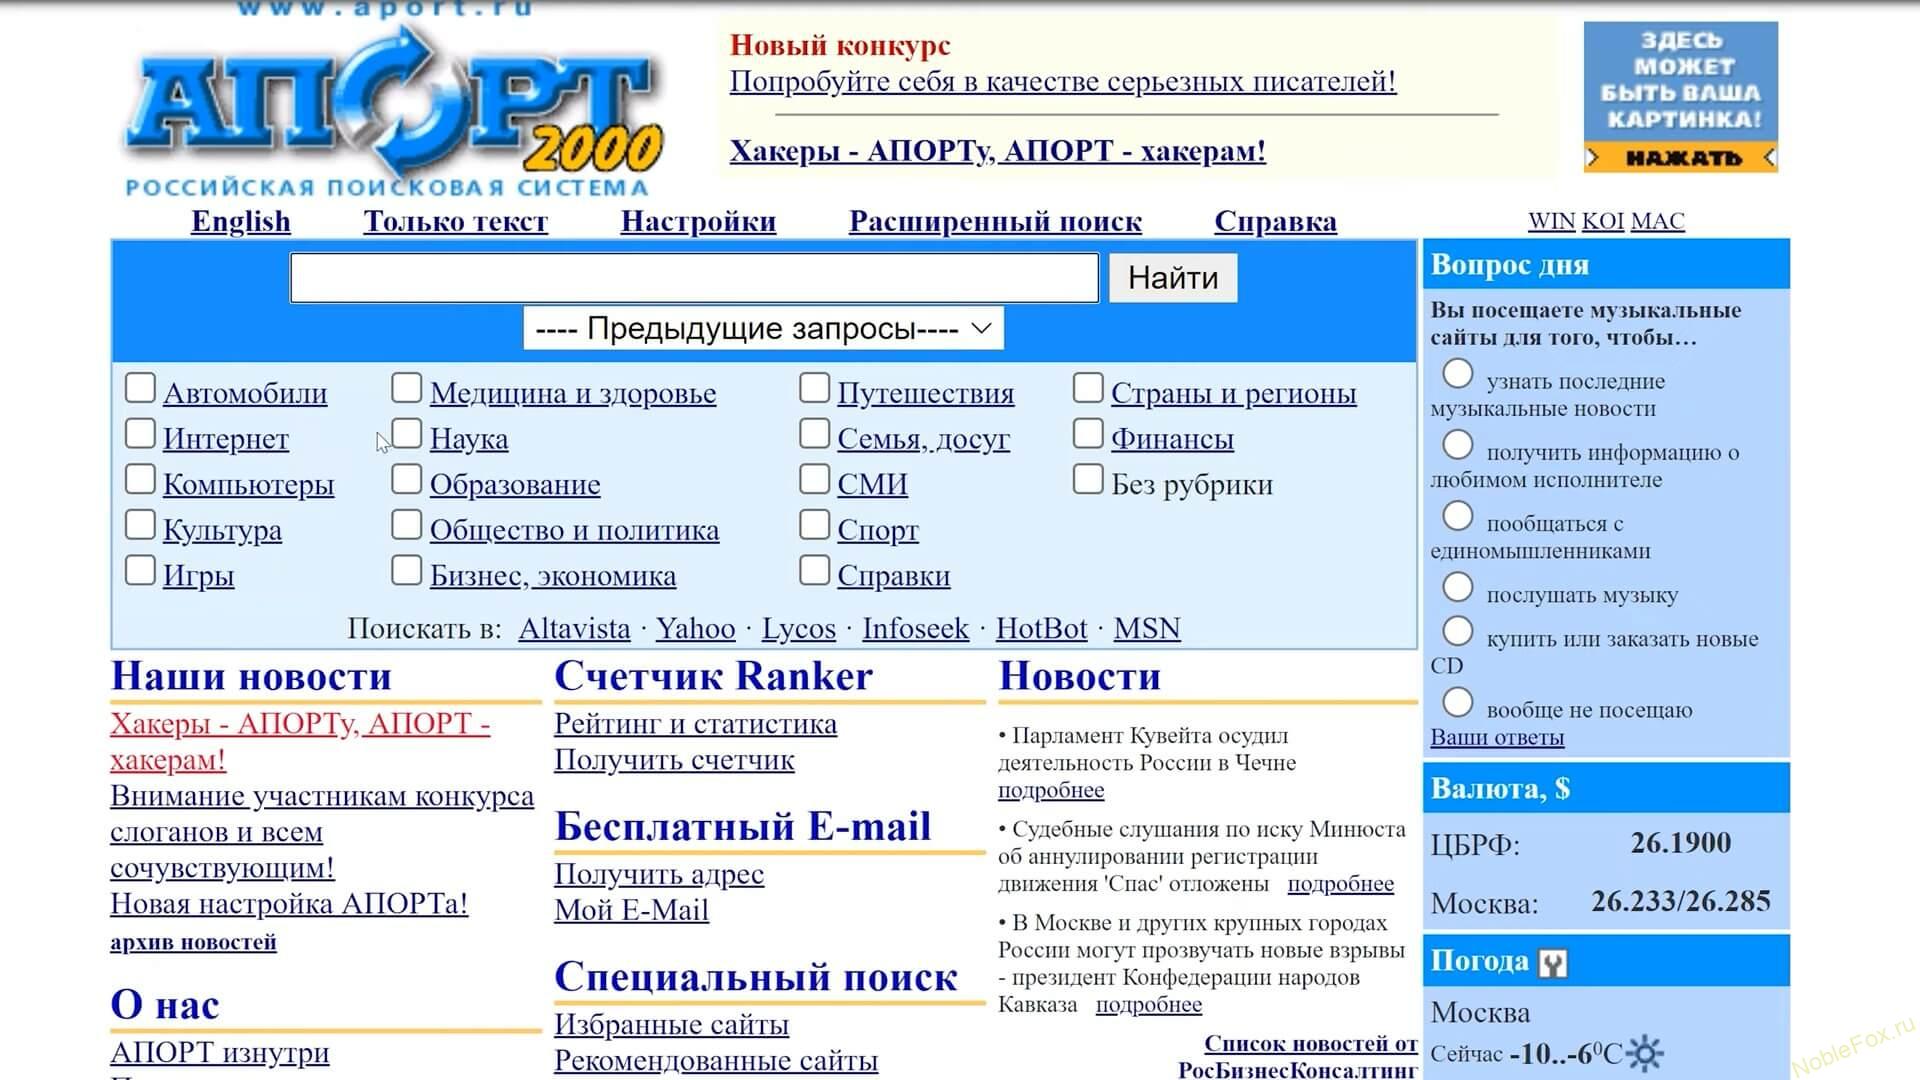 Апорт - в прошлом российская поисковая система